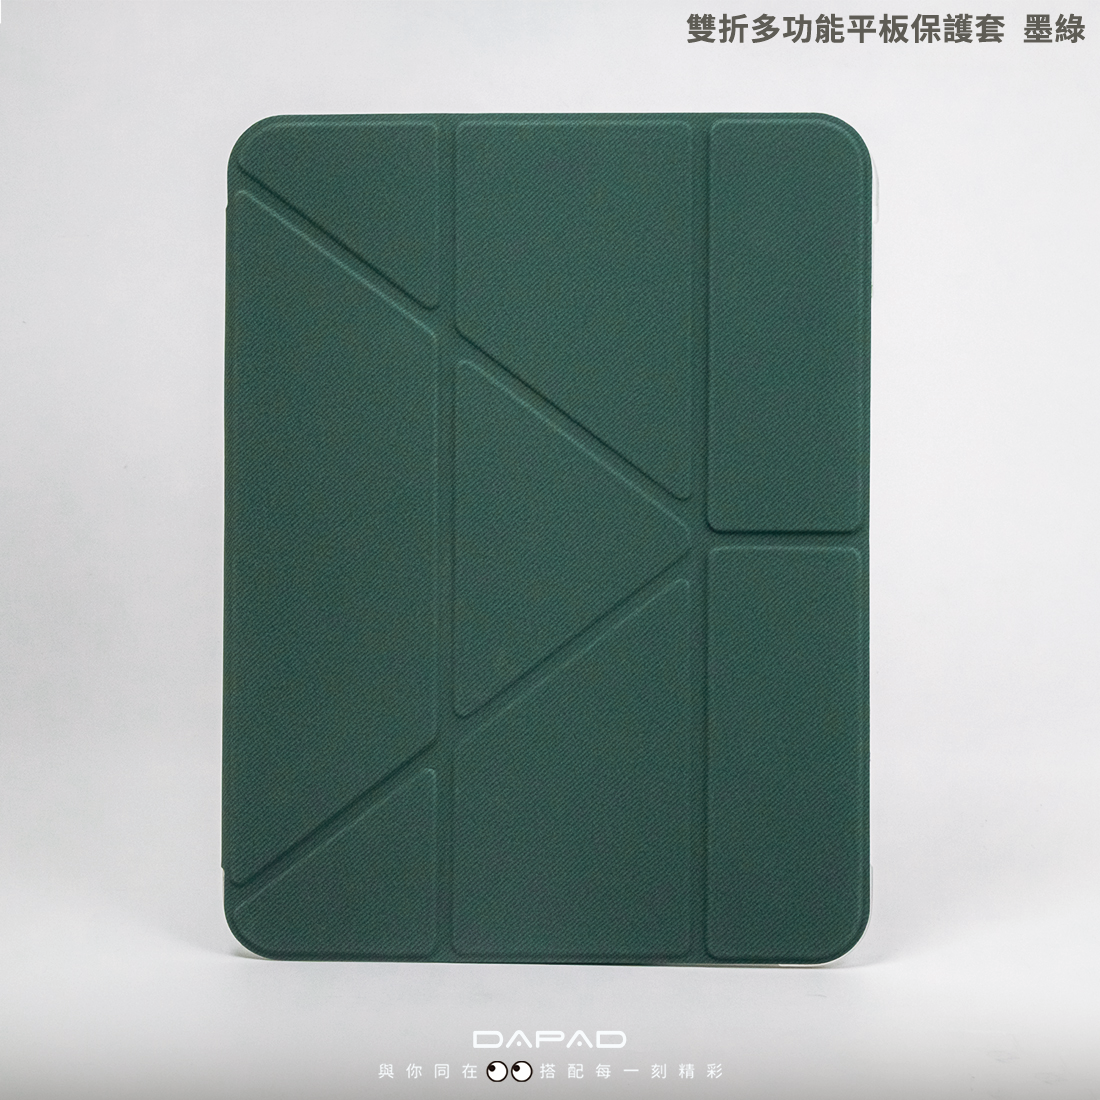 DAPAD 雙折多功能平板皮套-帶筆槽 墨綠